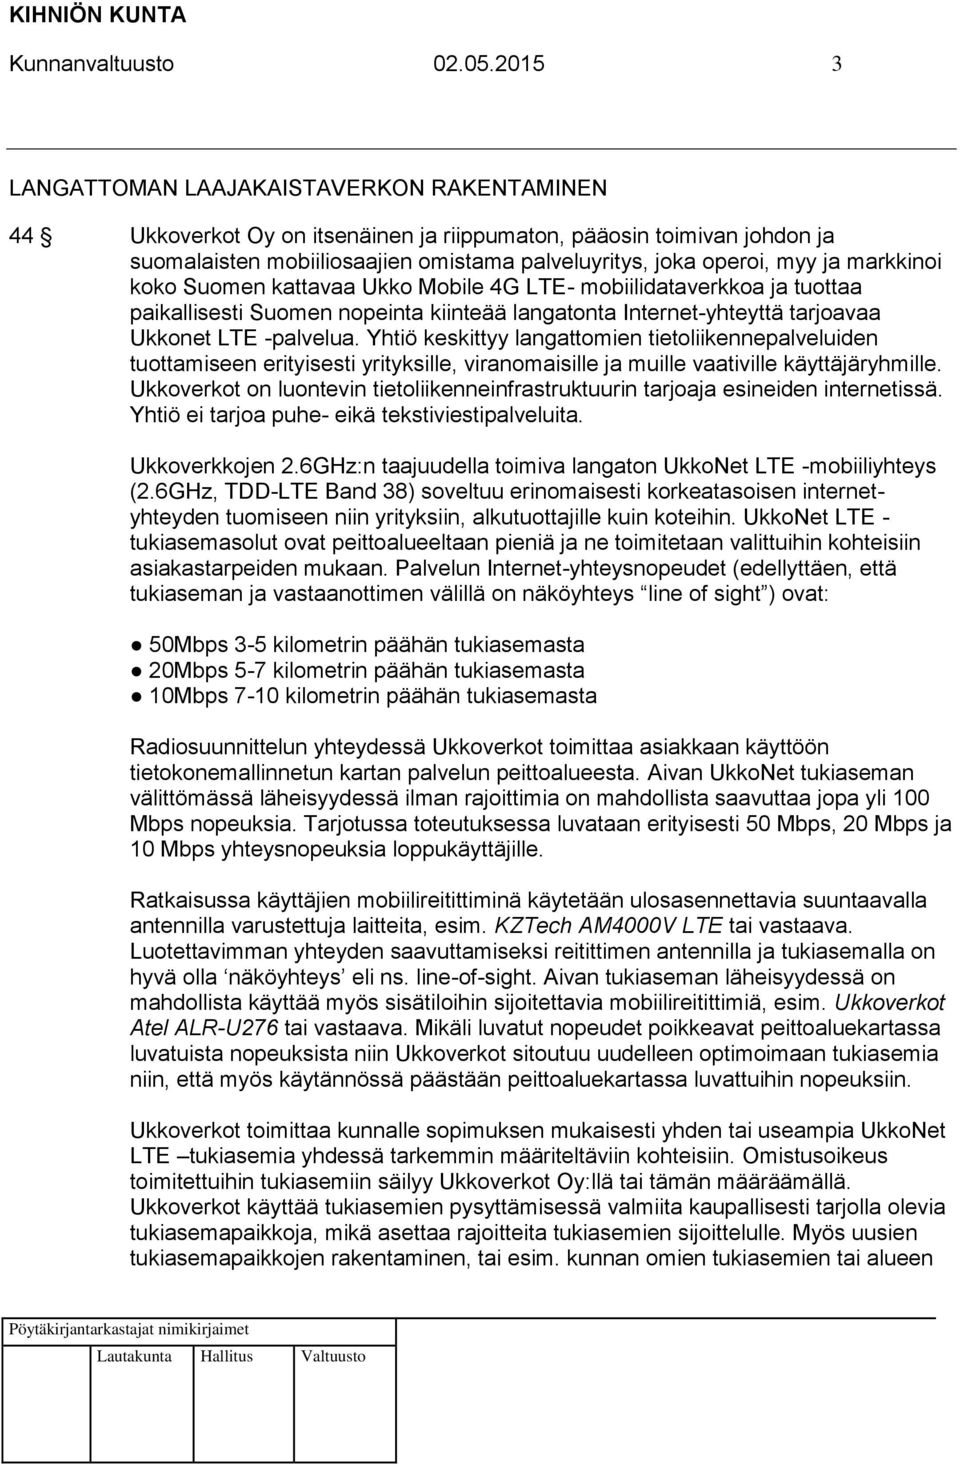 markkinoi koko Suomen kattavaa Ukko Mobile 4G LTE- mobiilidataverkkoa ja tuottaa paikallisesti Suomen nopeinta kiinteää langatonta Internet-yhteyttä tarjoavaa Ukkonet LTE -palvelua.